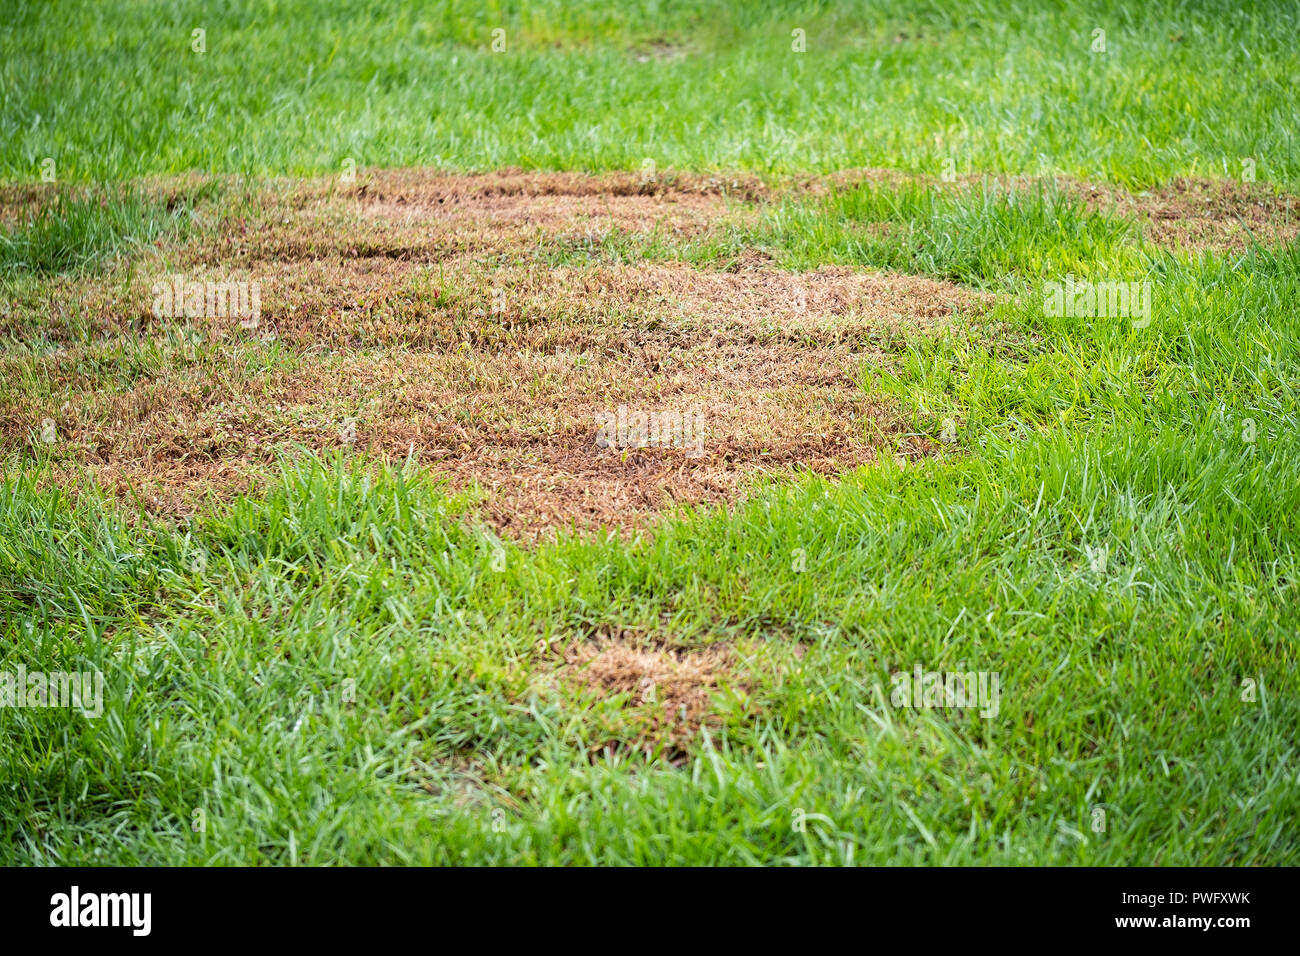 Un punto morto in una Festuca arundinacea Festuca prato durante la tarda estate. Wichita, Kansas, Stati Uniti d'America. Foto Stock